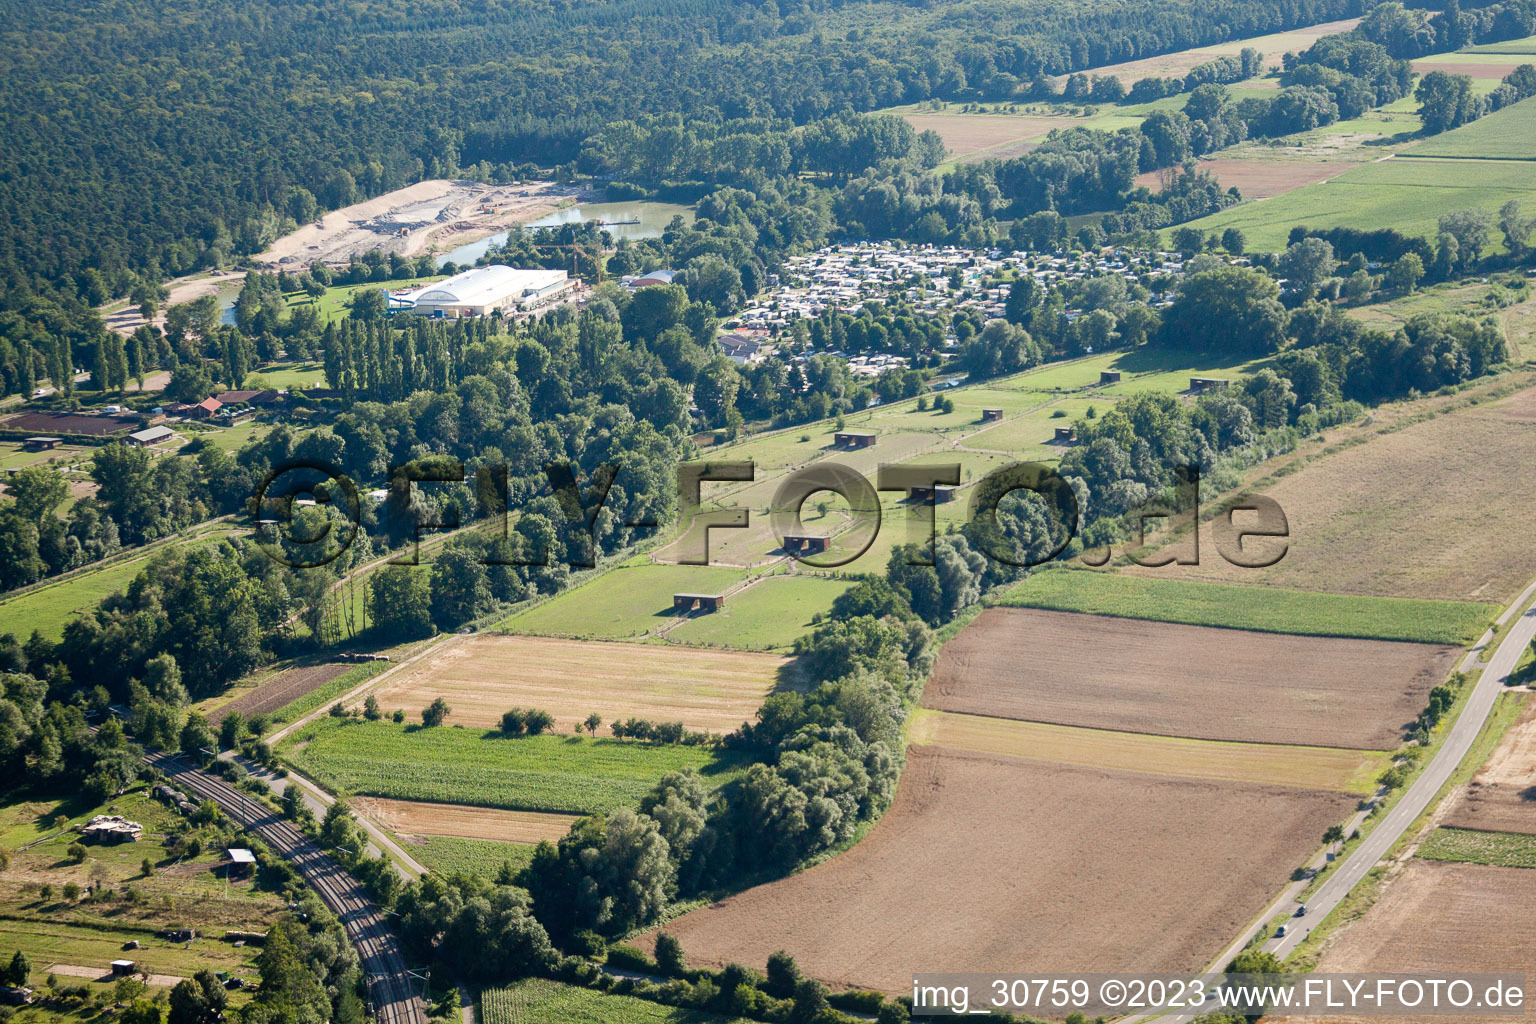 Vue aérienne de Ferme d'autruches de Mhou à Rülzheim dans le département Rhénanie-Palatinat, Allemagne